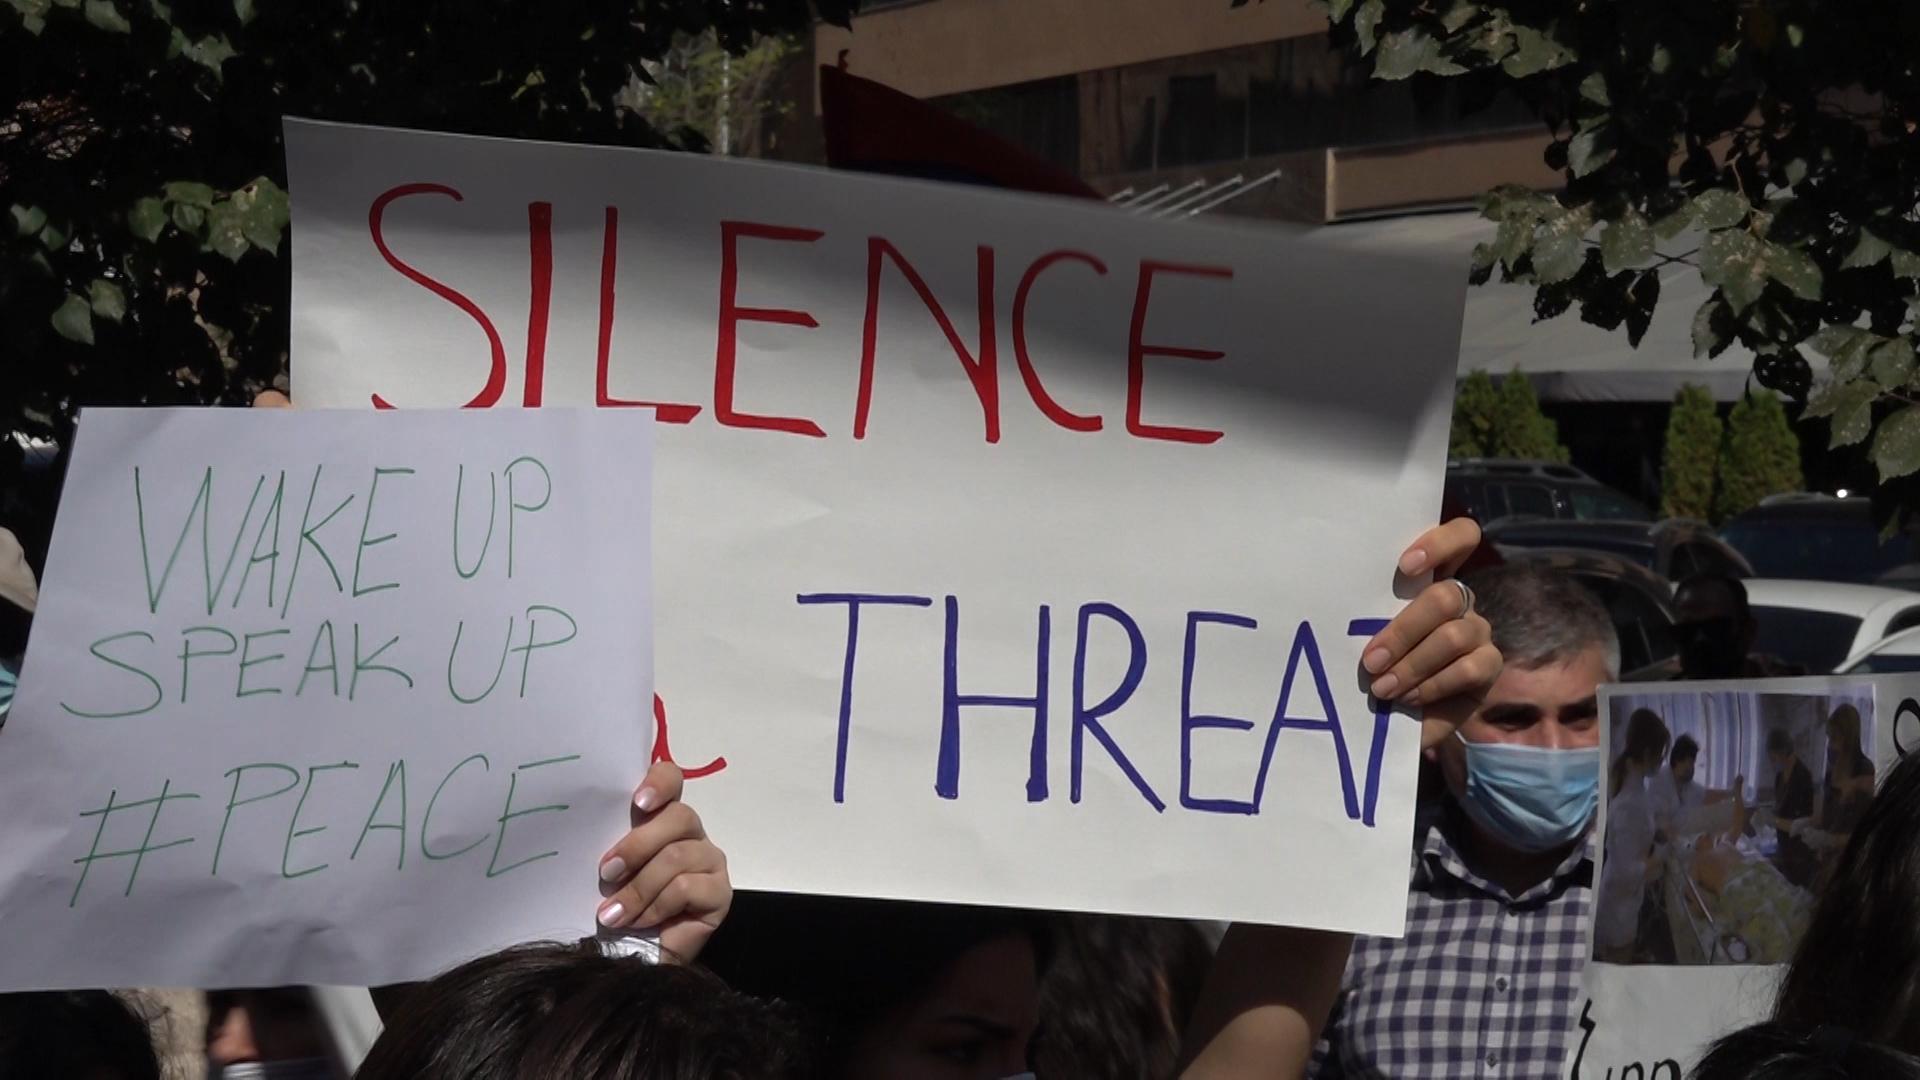 Բողոքի ցույց՝ ՄԱԿ-ի հայաստանյան գրասենյակի դիմաց | Armenians Protest in Front of the UN Office in Armenia, Demanding Action Against War Crimes in Karabakh